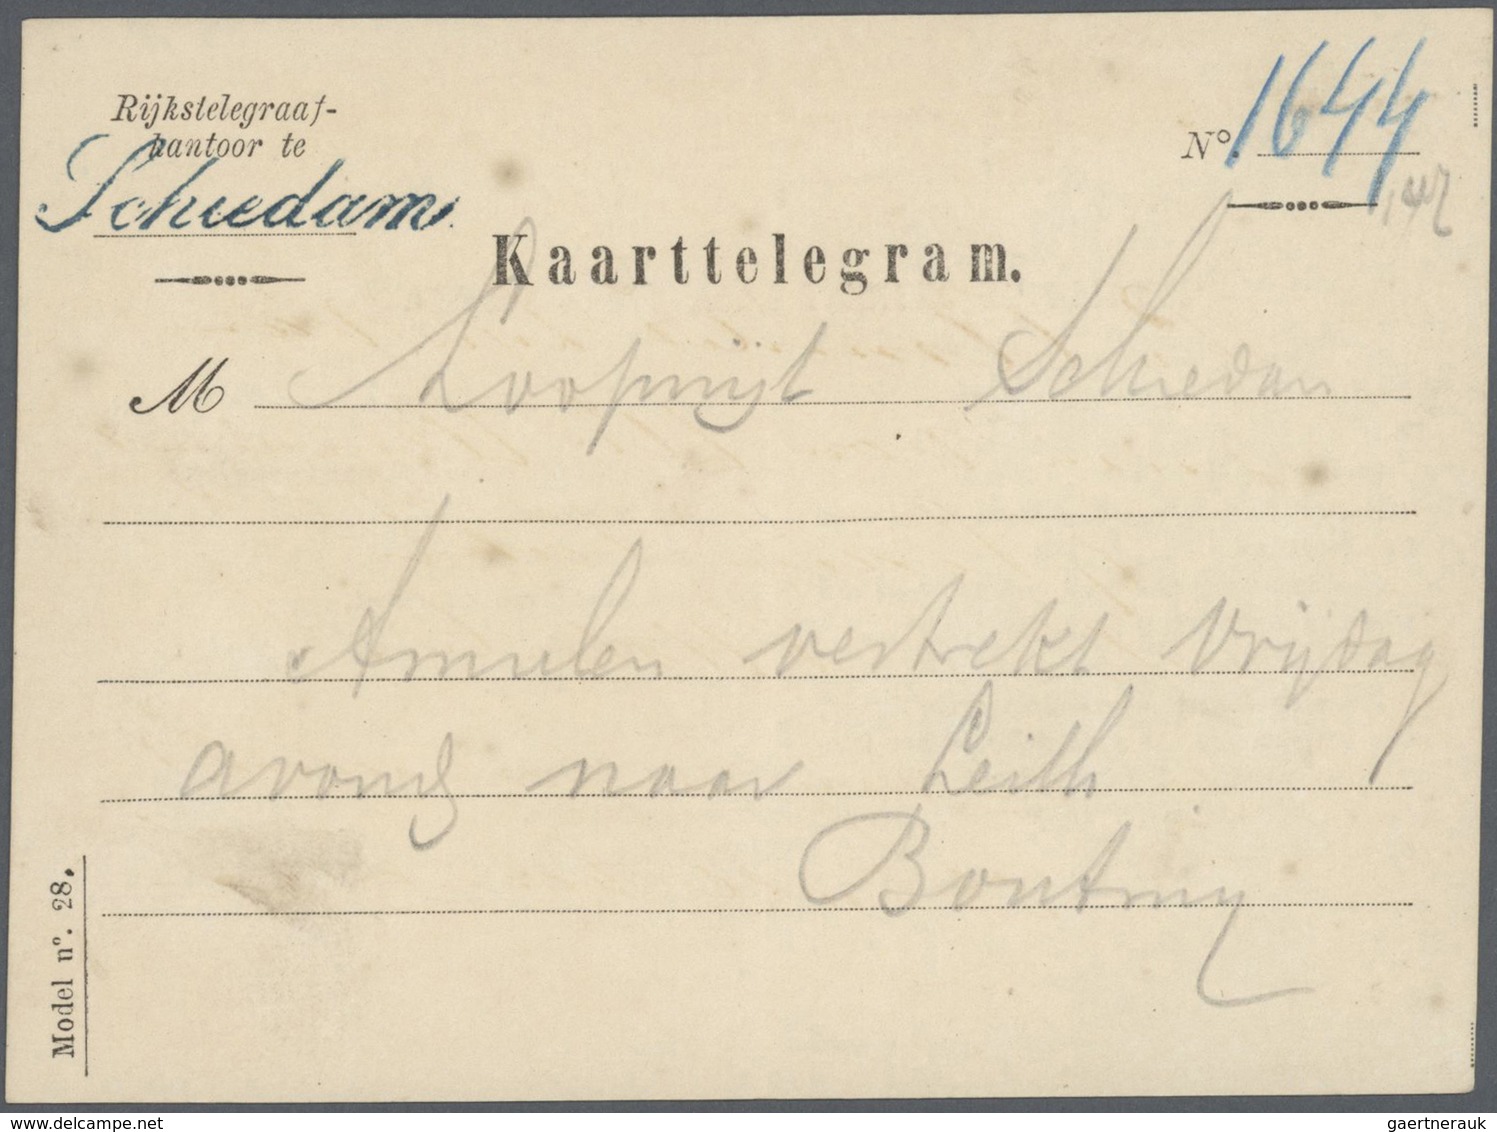 27445 Niederlande: 1869 - 1930 ca. Spannende Partie von über 100 Belegen, dabei Briefe, Ganzsachen, einieg